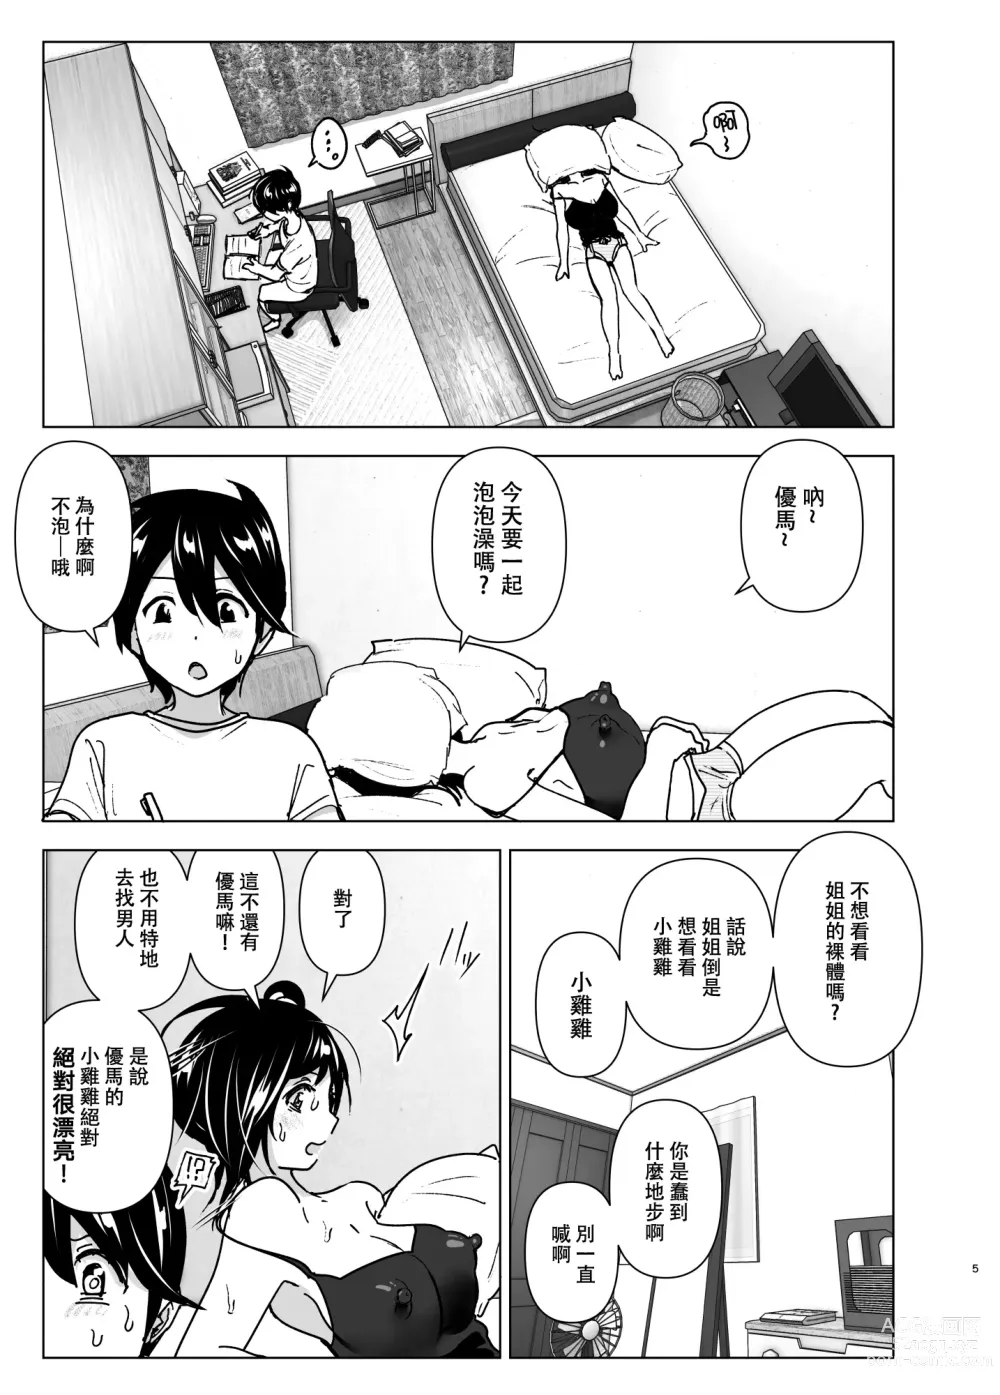 Page 4 of doujinshi 姐姐與傾聽抱怨的弟弟的故事 (decensored)